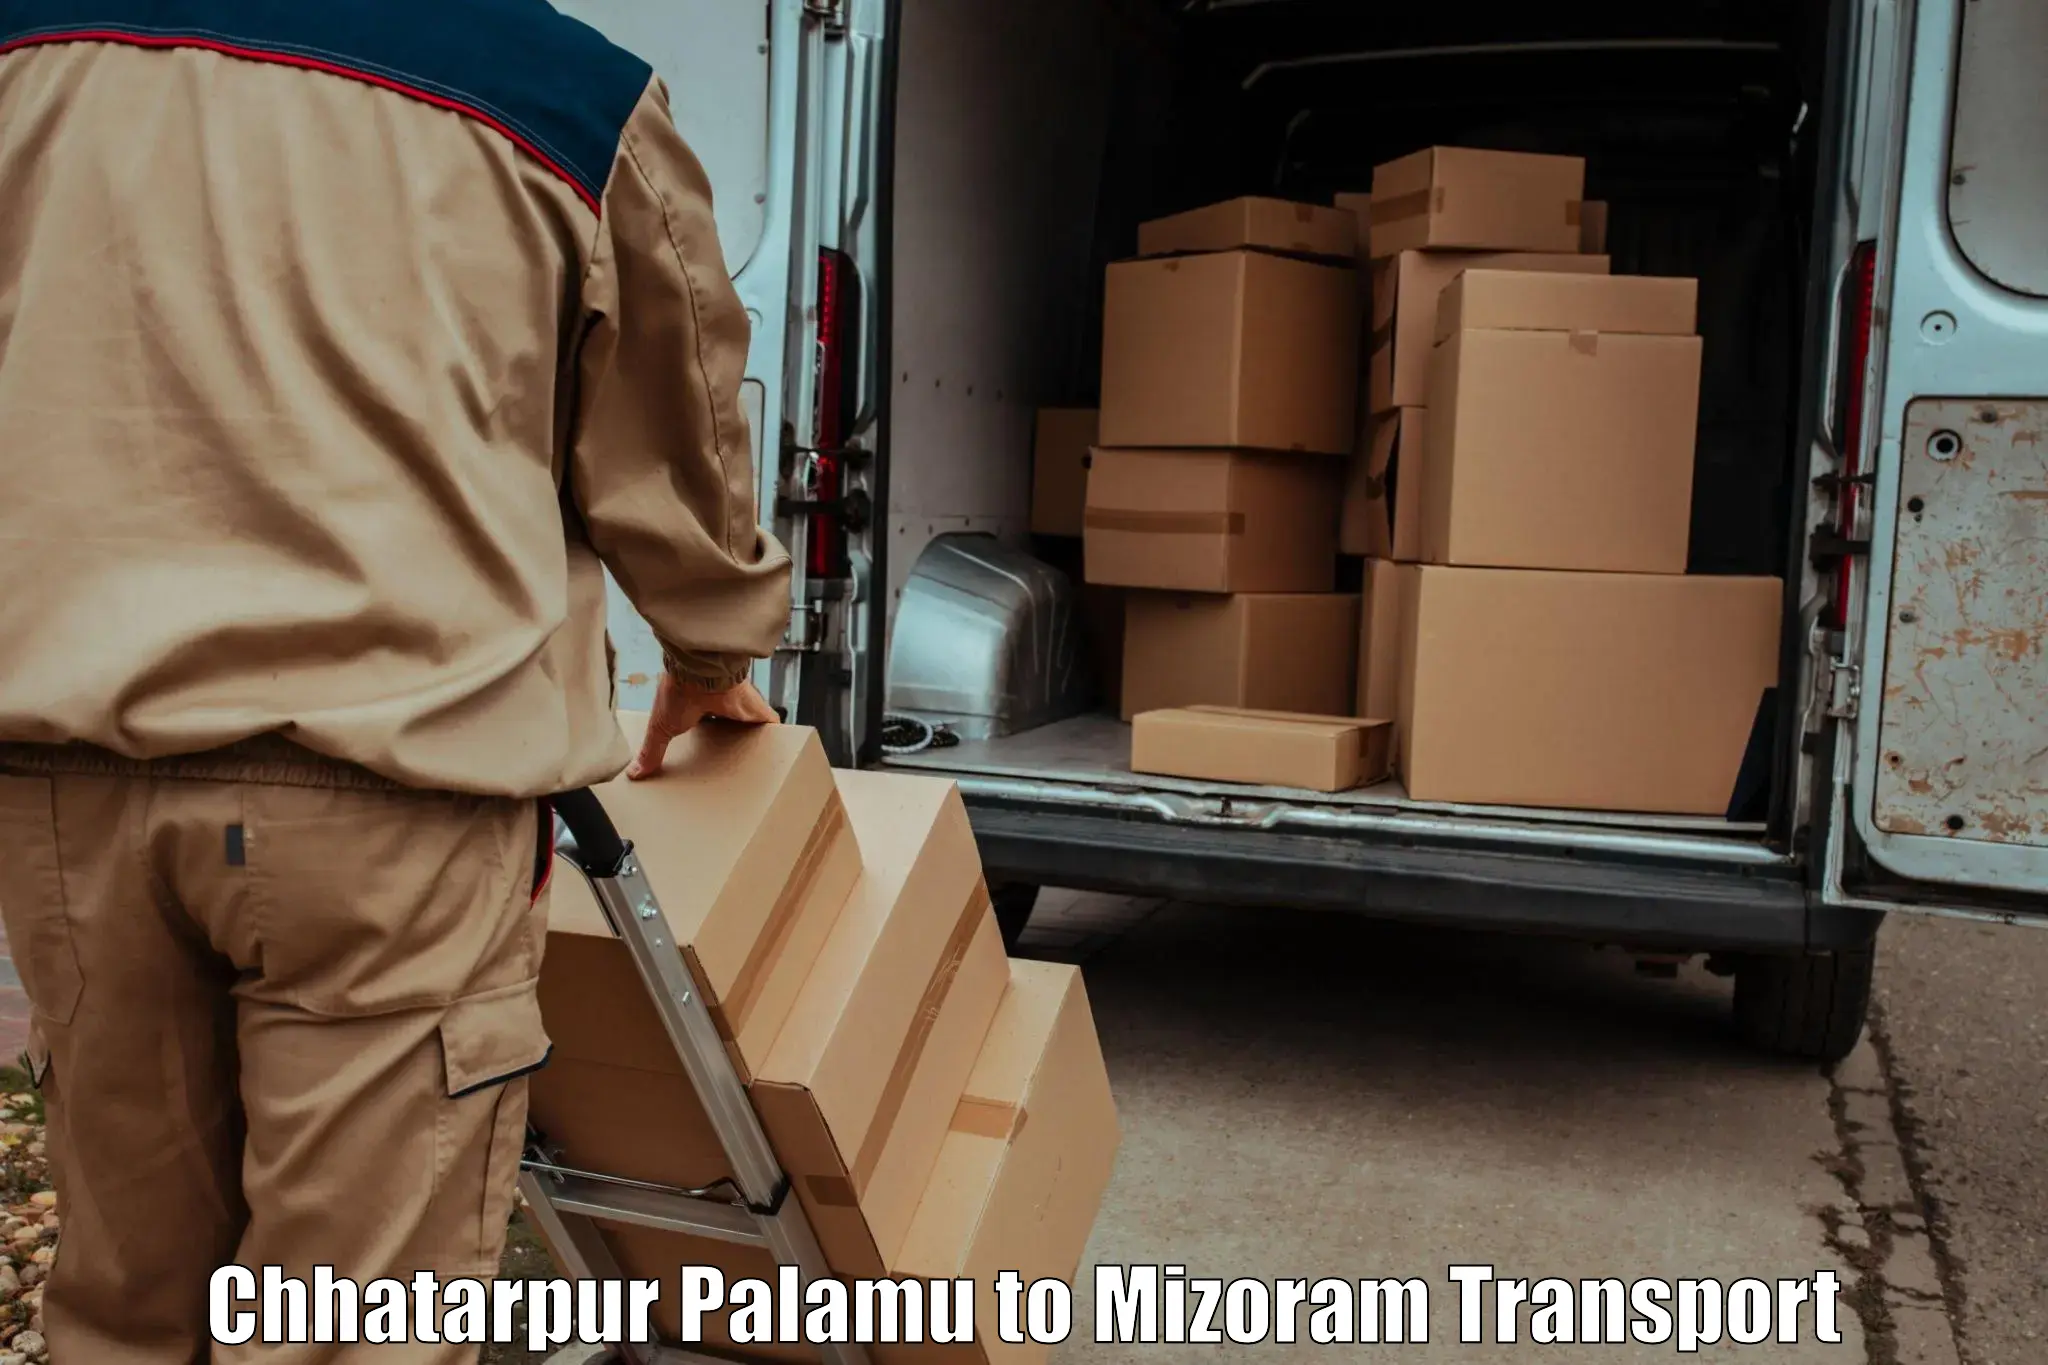 Lorry transport service Chhatarpur Palamu to Aizawl